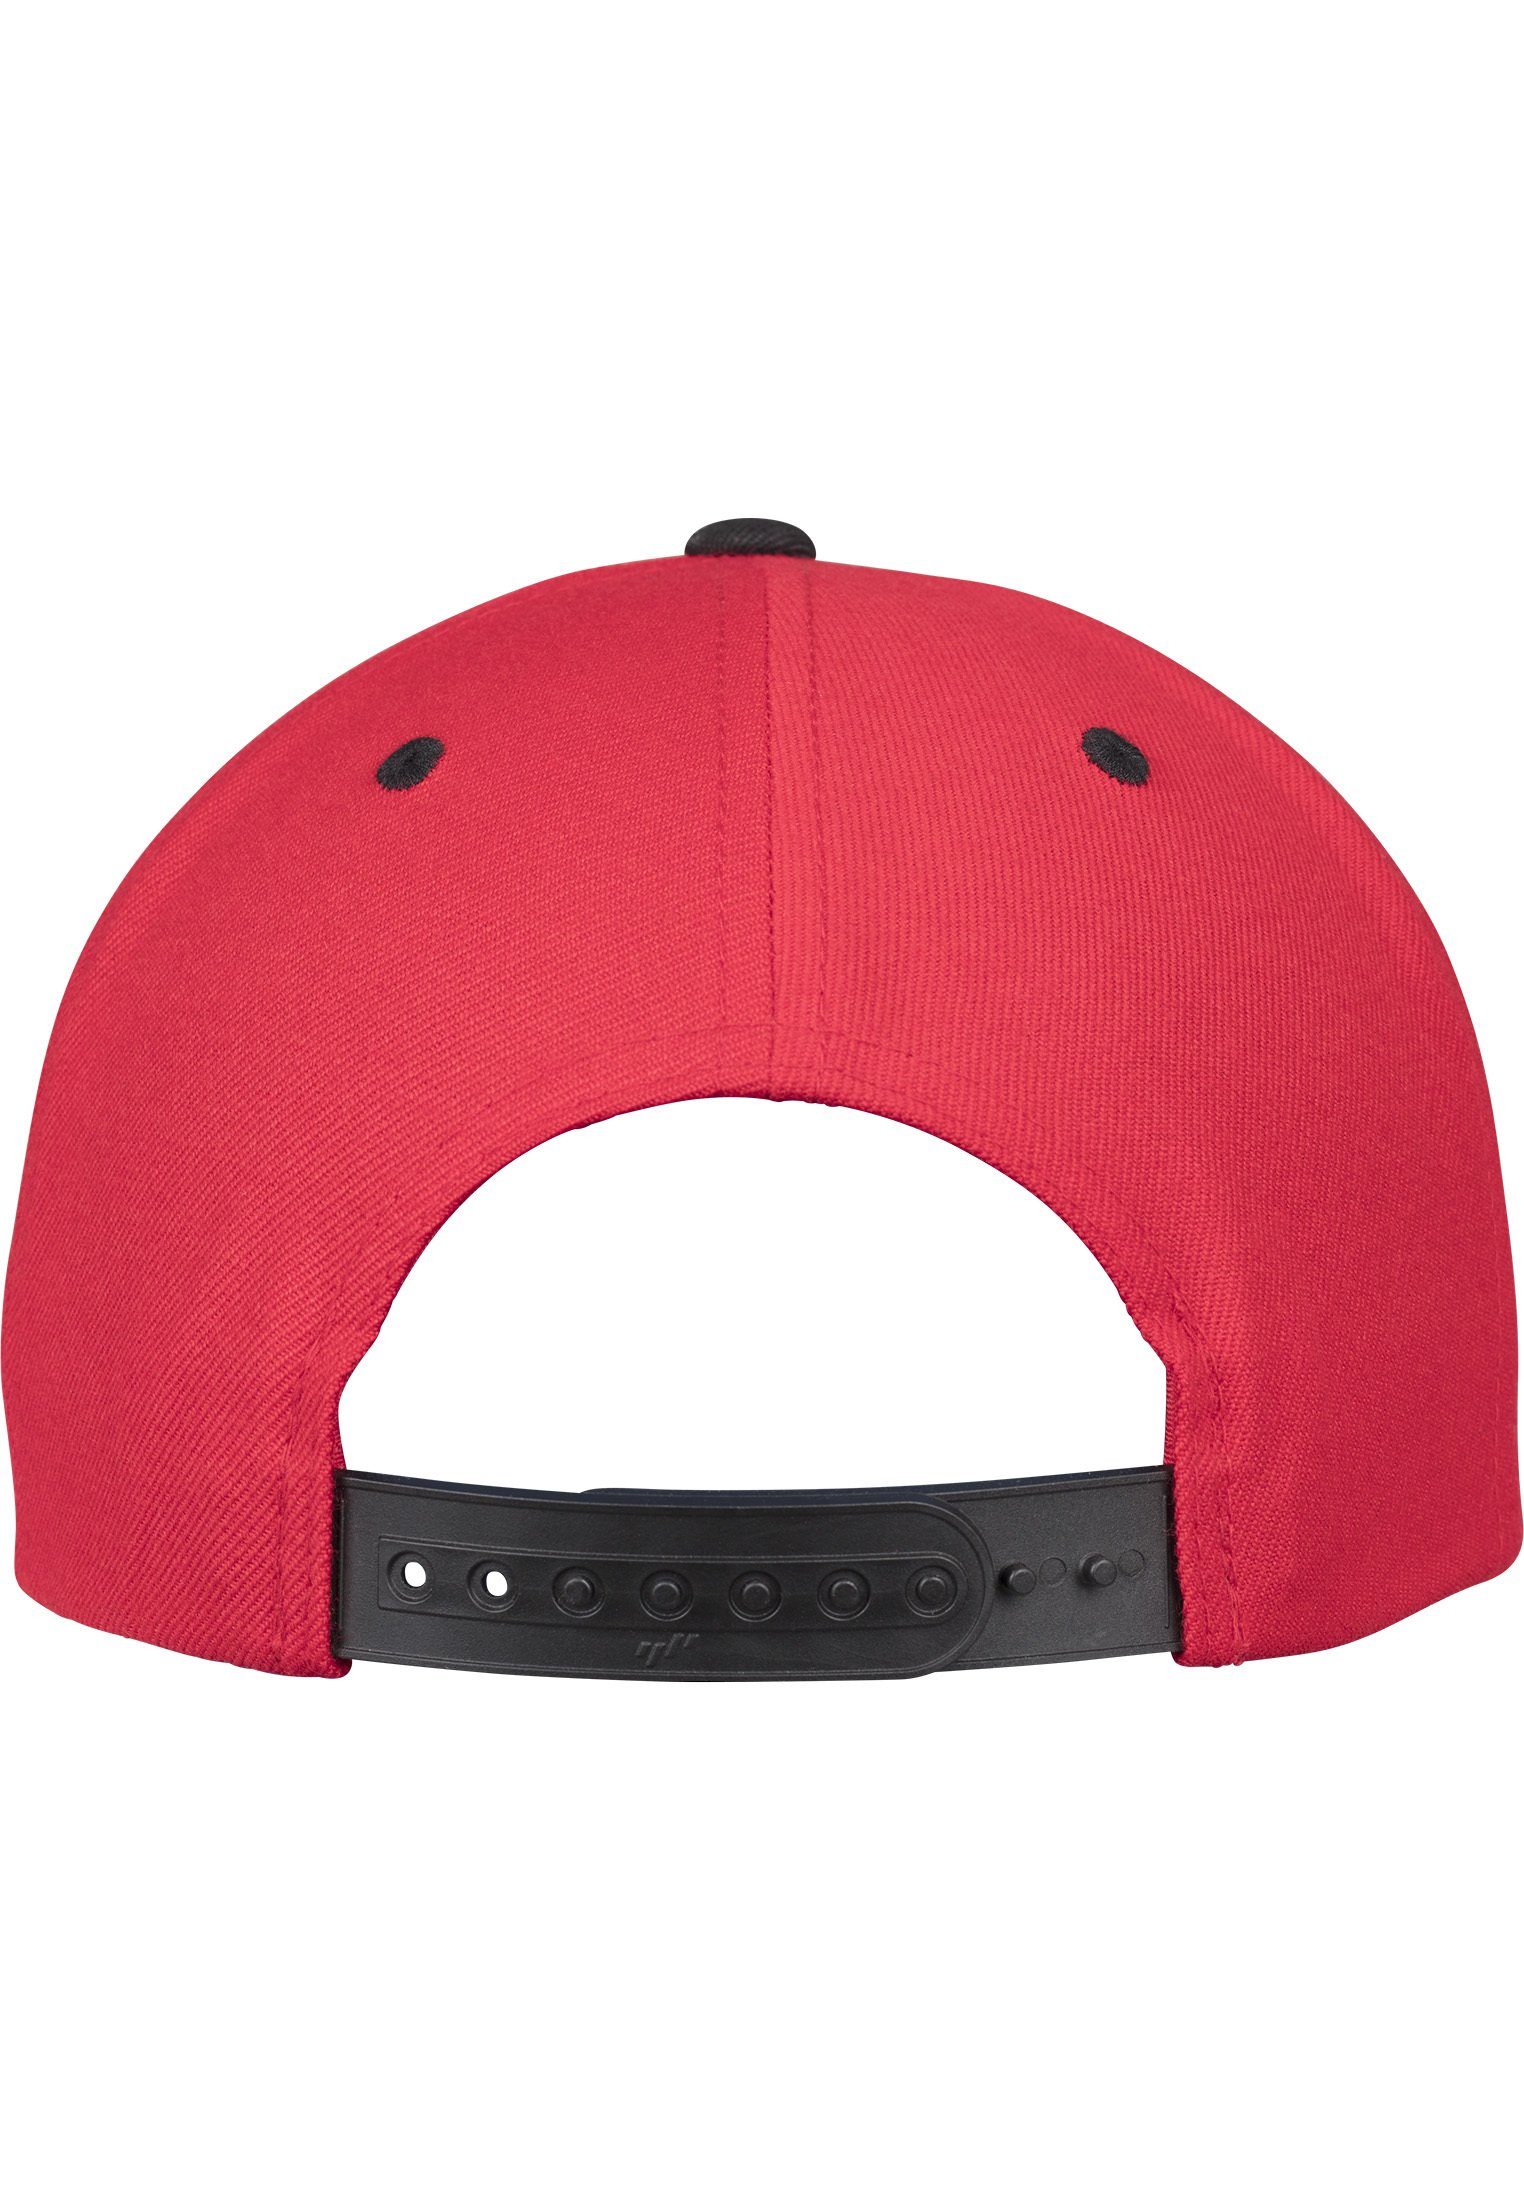 2-Tone Flexfit Cap red/black Snapback Classic Flex Snapback